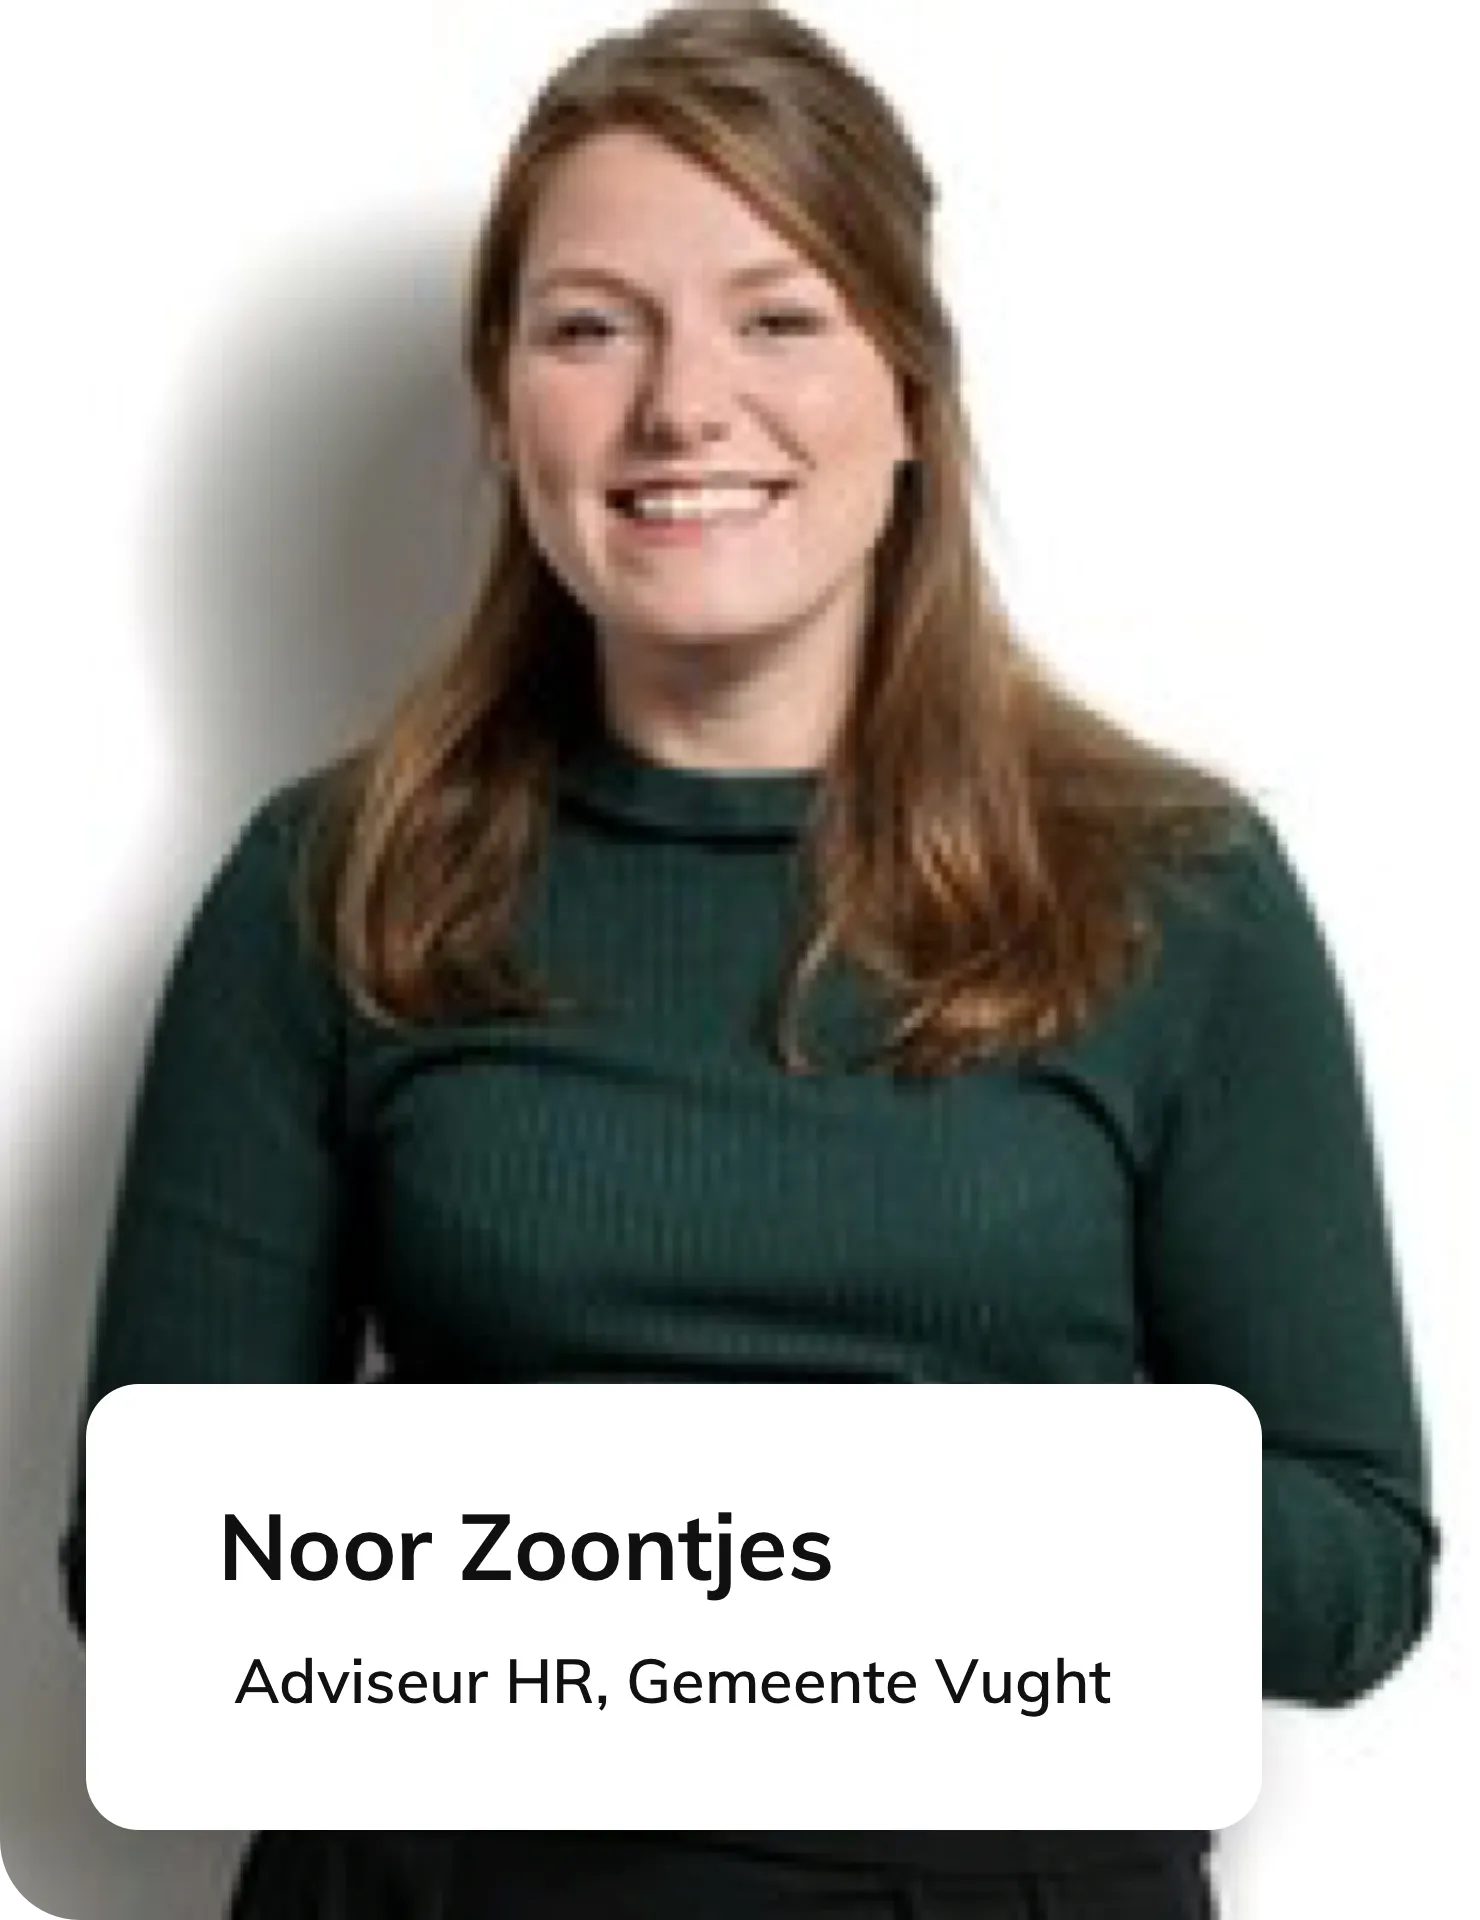 Noor Zoontjes, Advisor HR at Gemeente Vught